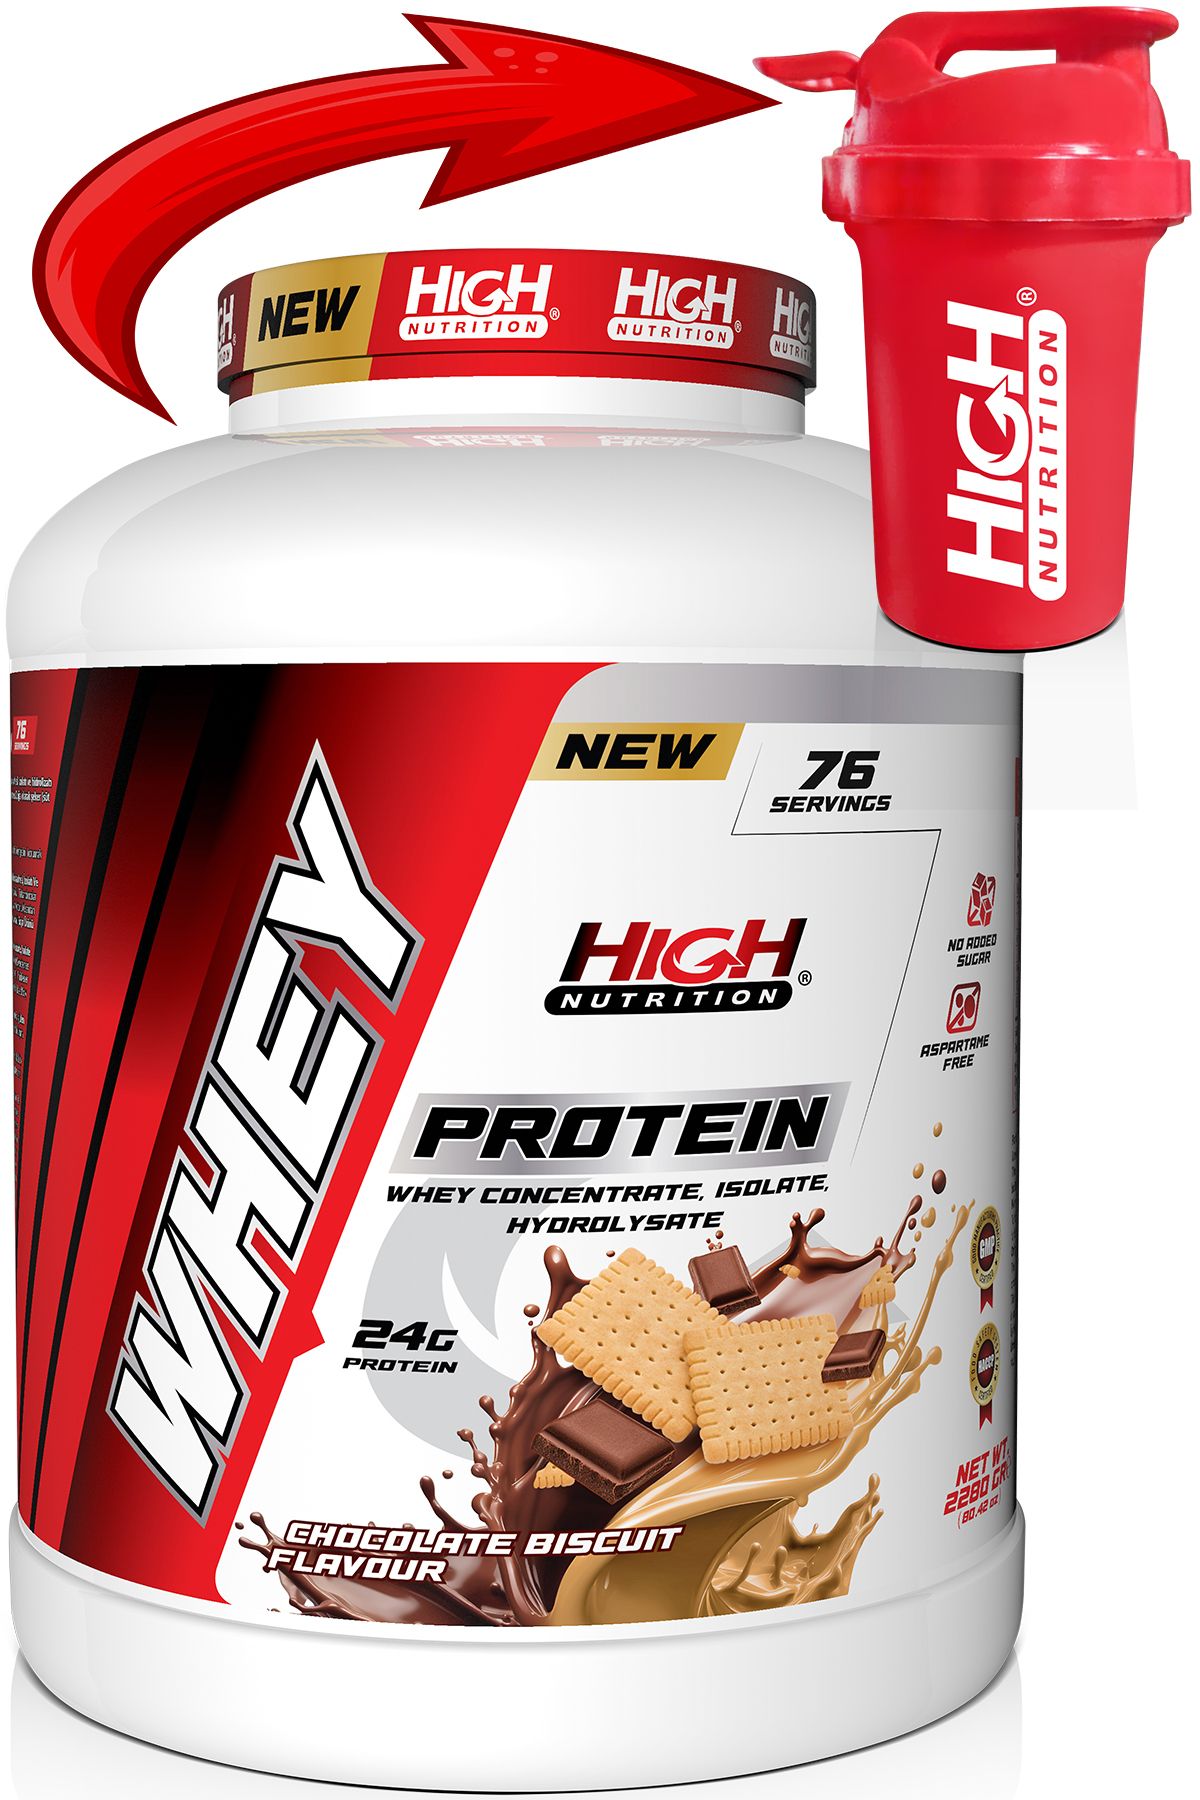 Protein Tozu 2280 Gr Çikolata Bisküvi Aromalı Whey Protein 24 Gram Protein 76 Servis Shaker Hediye